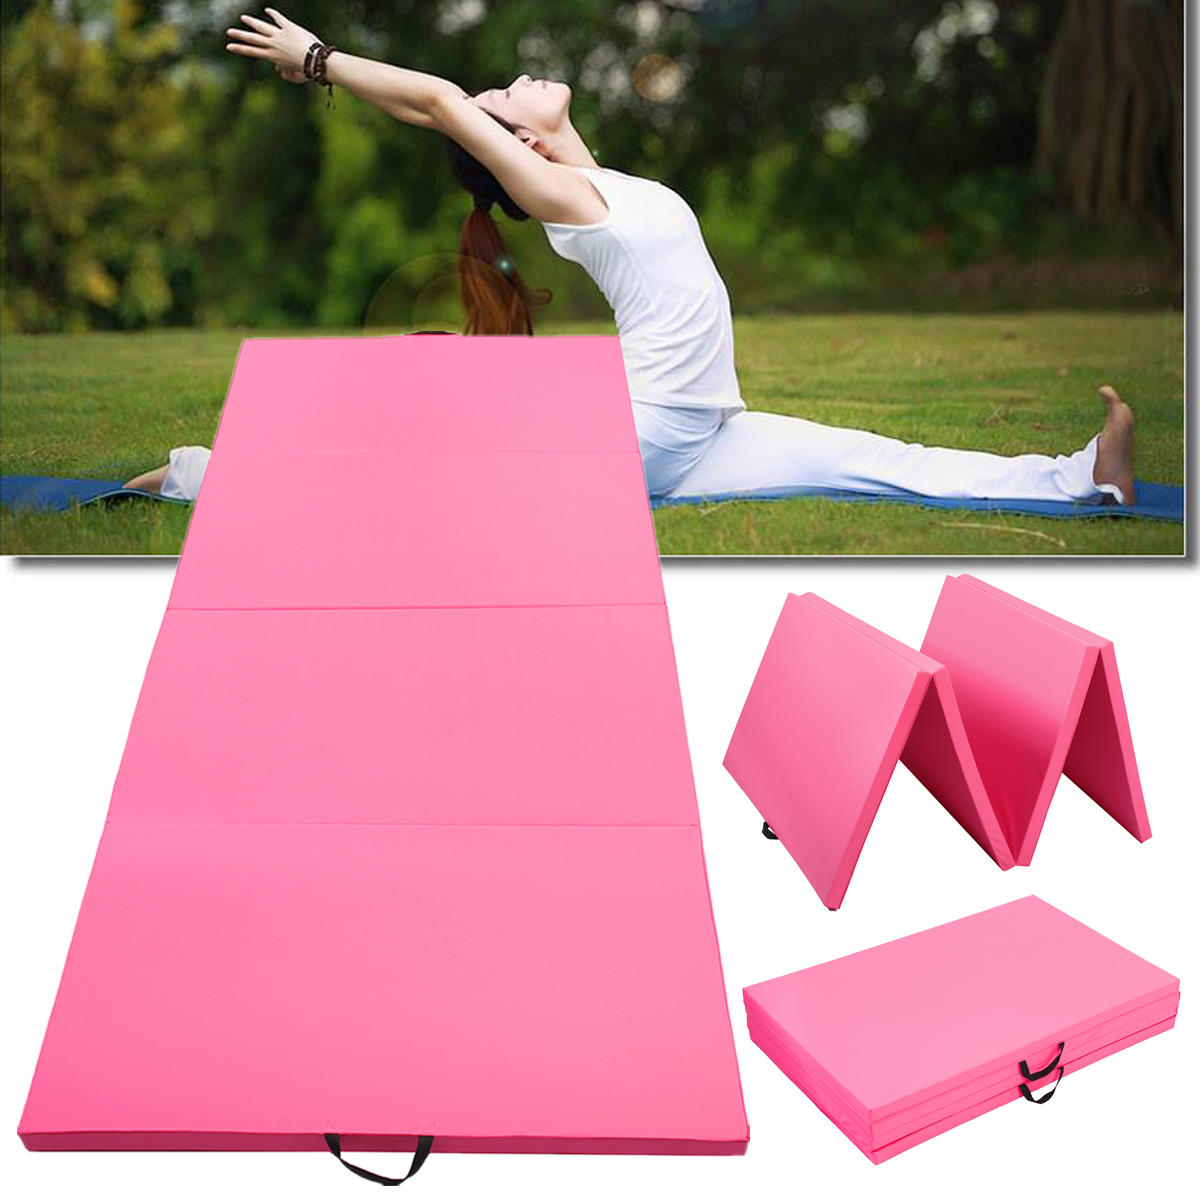 4-fach faltbare, supergroße Gymnastikmatte für Yoga und Fitnessstudio-Übungen in Pink, Maße: 300x120x5 cm